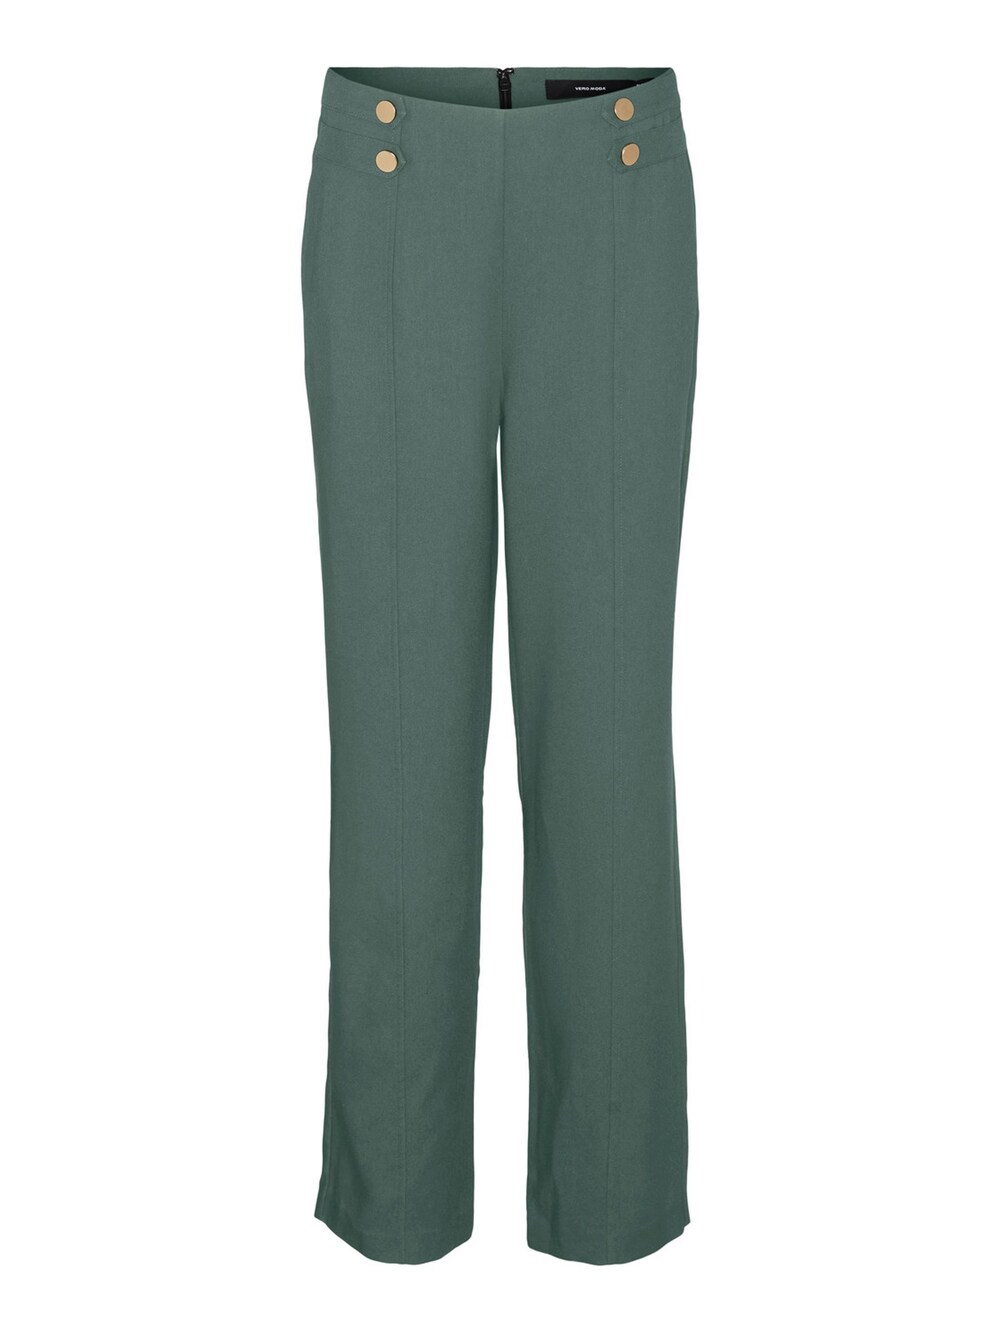 Обычные брюки со складками спереди VERO MODA, зеленый обычные брюки vero moda girl octavia пастельно зеленый